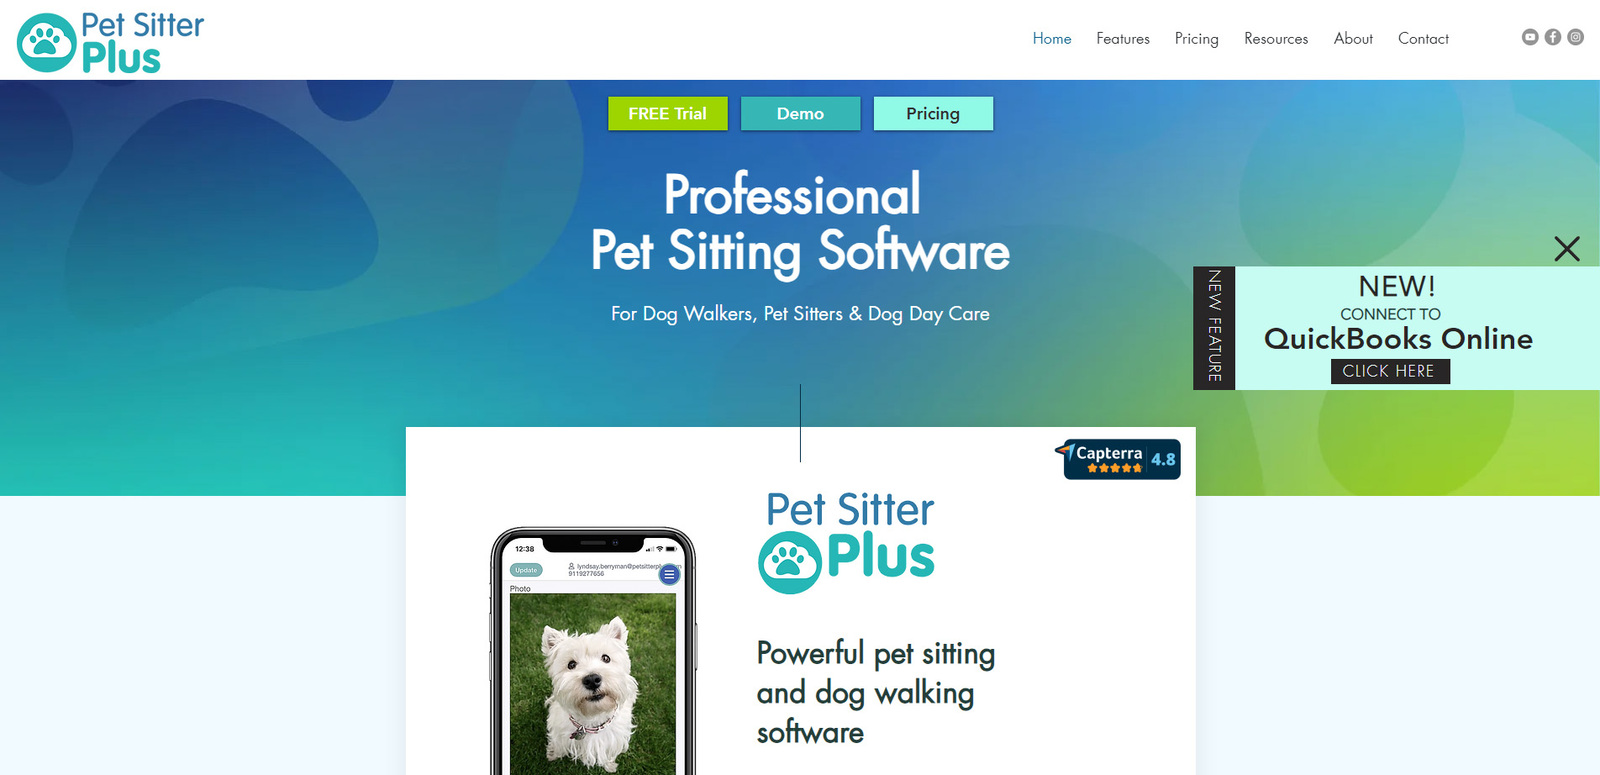 Figur Pet Sitter Plus, solusi penitipan hewan peliharaan yang komprehensif.